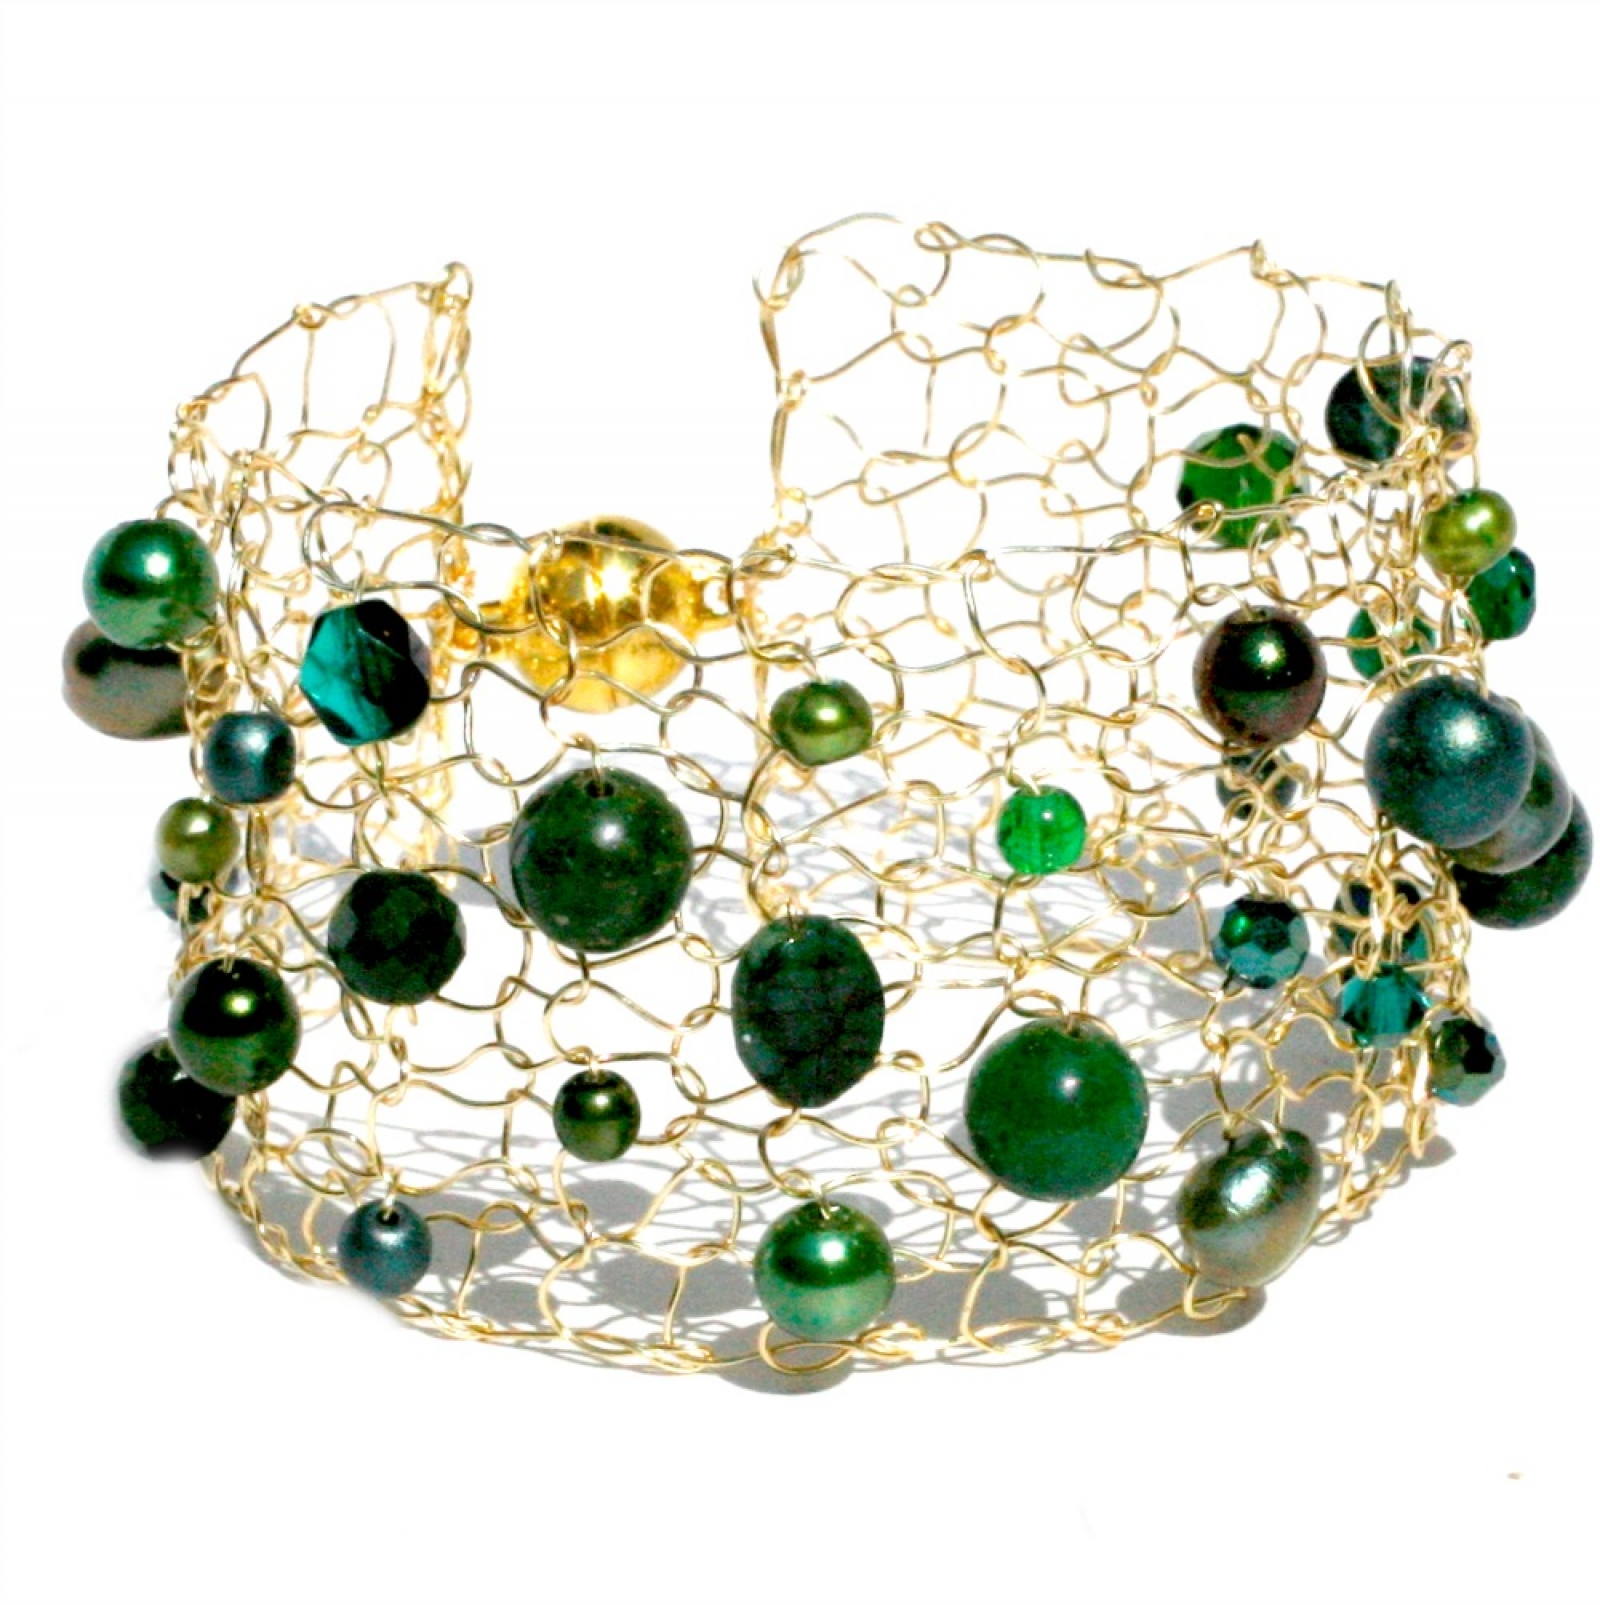 Cuff Bracelet, Emerald